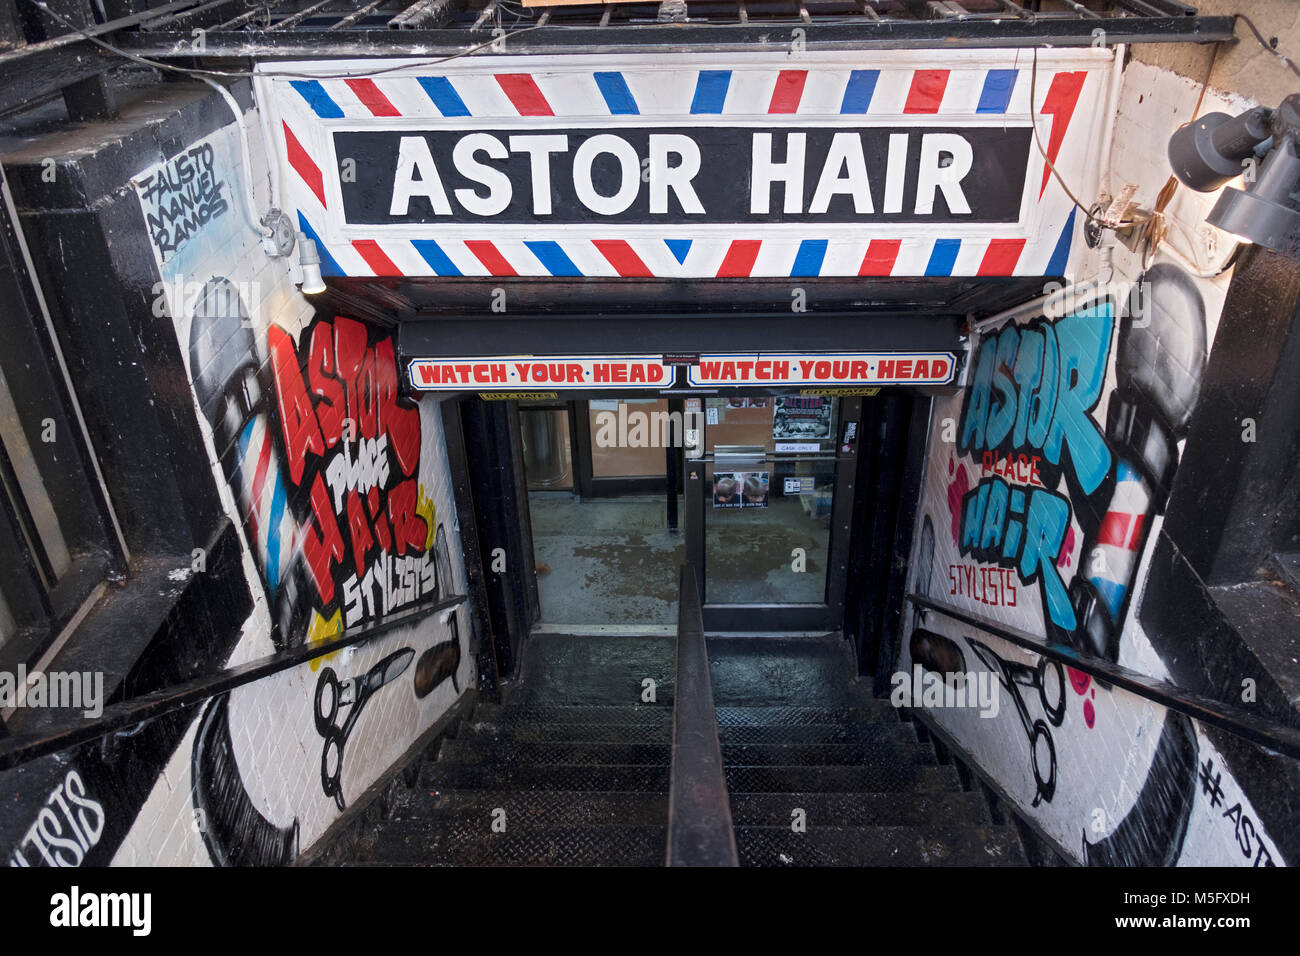 Der Eingang zu Astor Place Haar eine trendige und legendären Unisex Friseur am Astor Place in Greenwich Village, Manhattan, New York City. Stockfoto